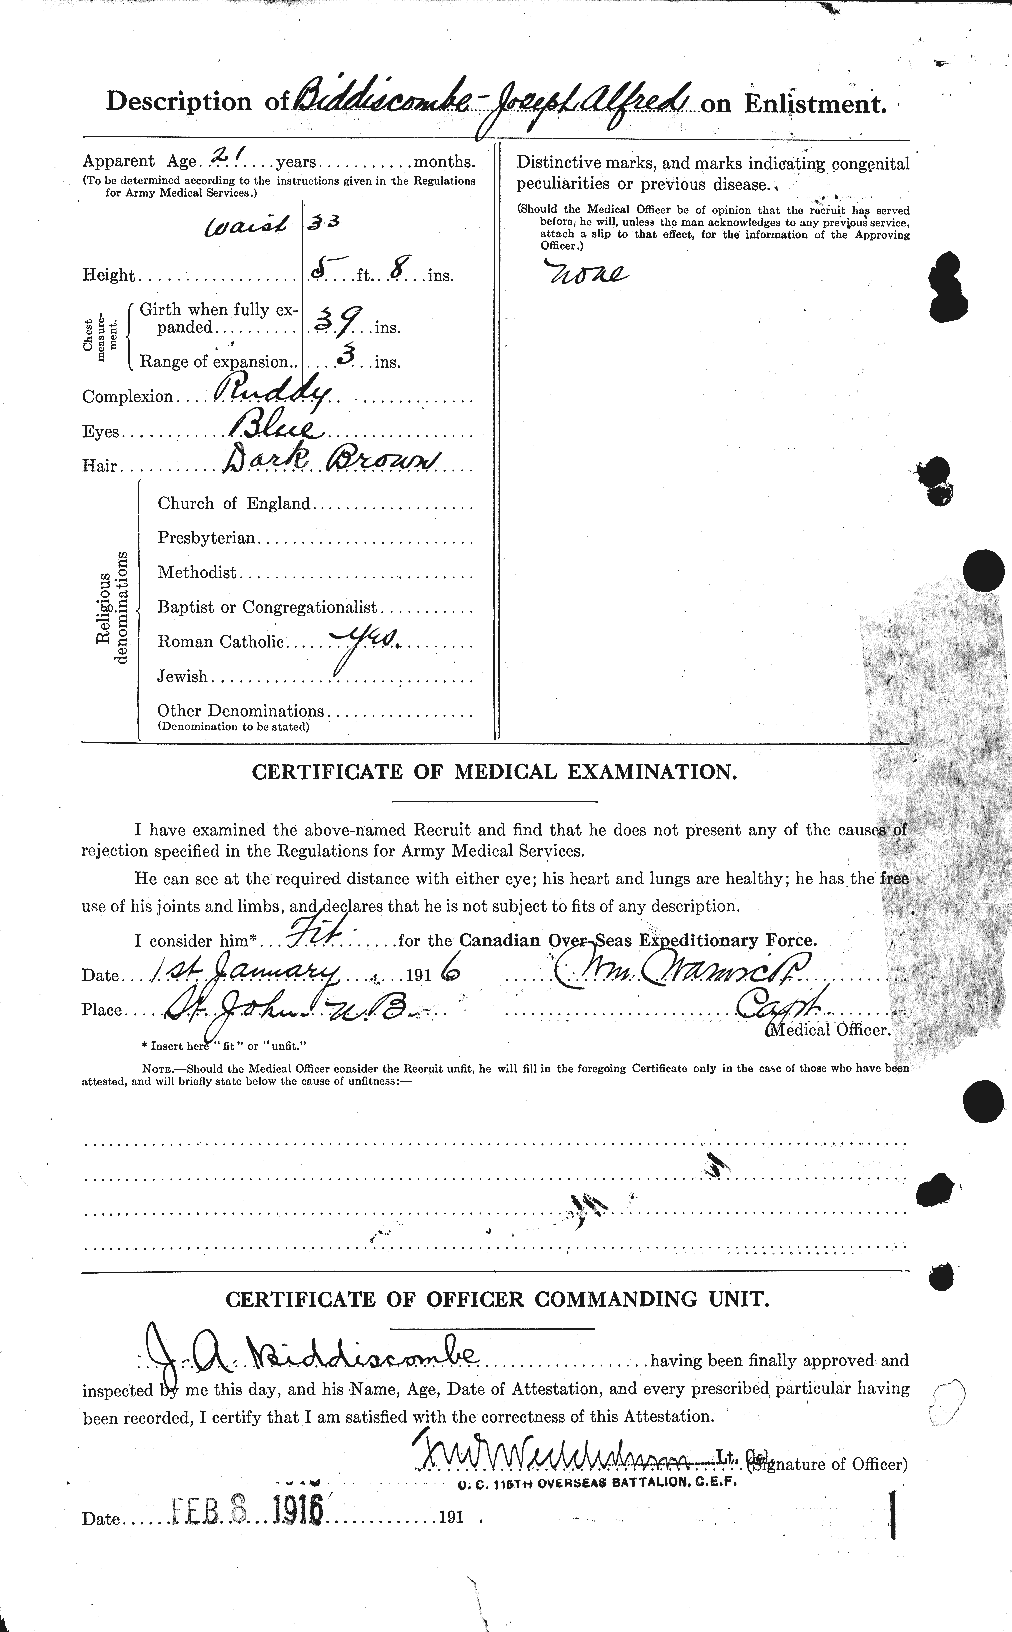 Dossiers du Personnel de la Première Guerre mondiale - CEC 244838b